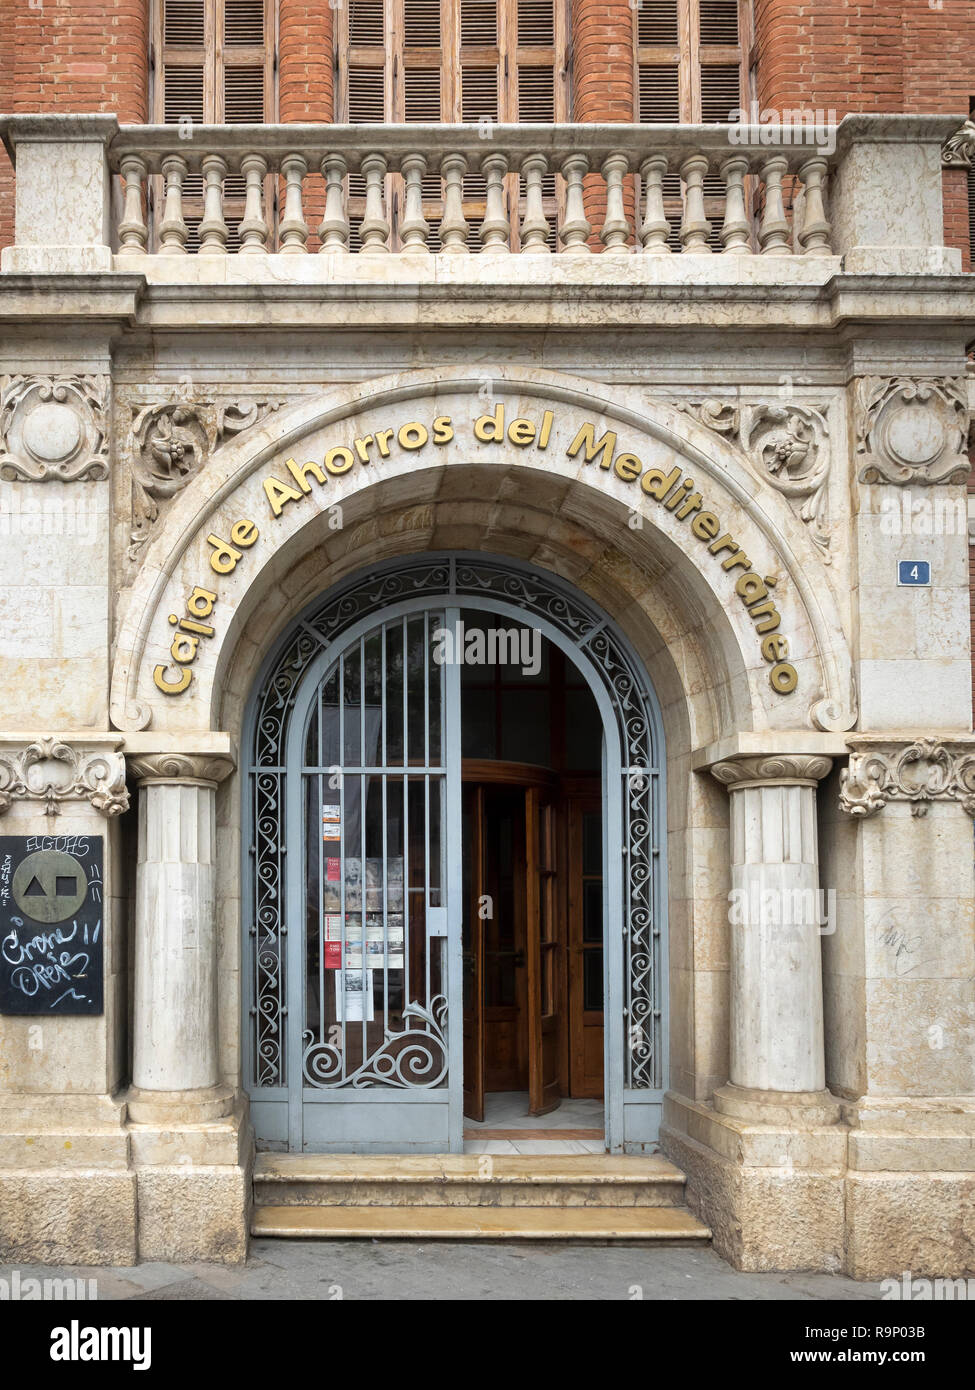 VALENCE, ESPAGNE - 24 MAI 2018 : porte avec panneau pour la Banque d'épargne méditerranéenne (Caja de Ahorros Del Mediterraneo) Banque D'Images